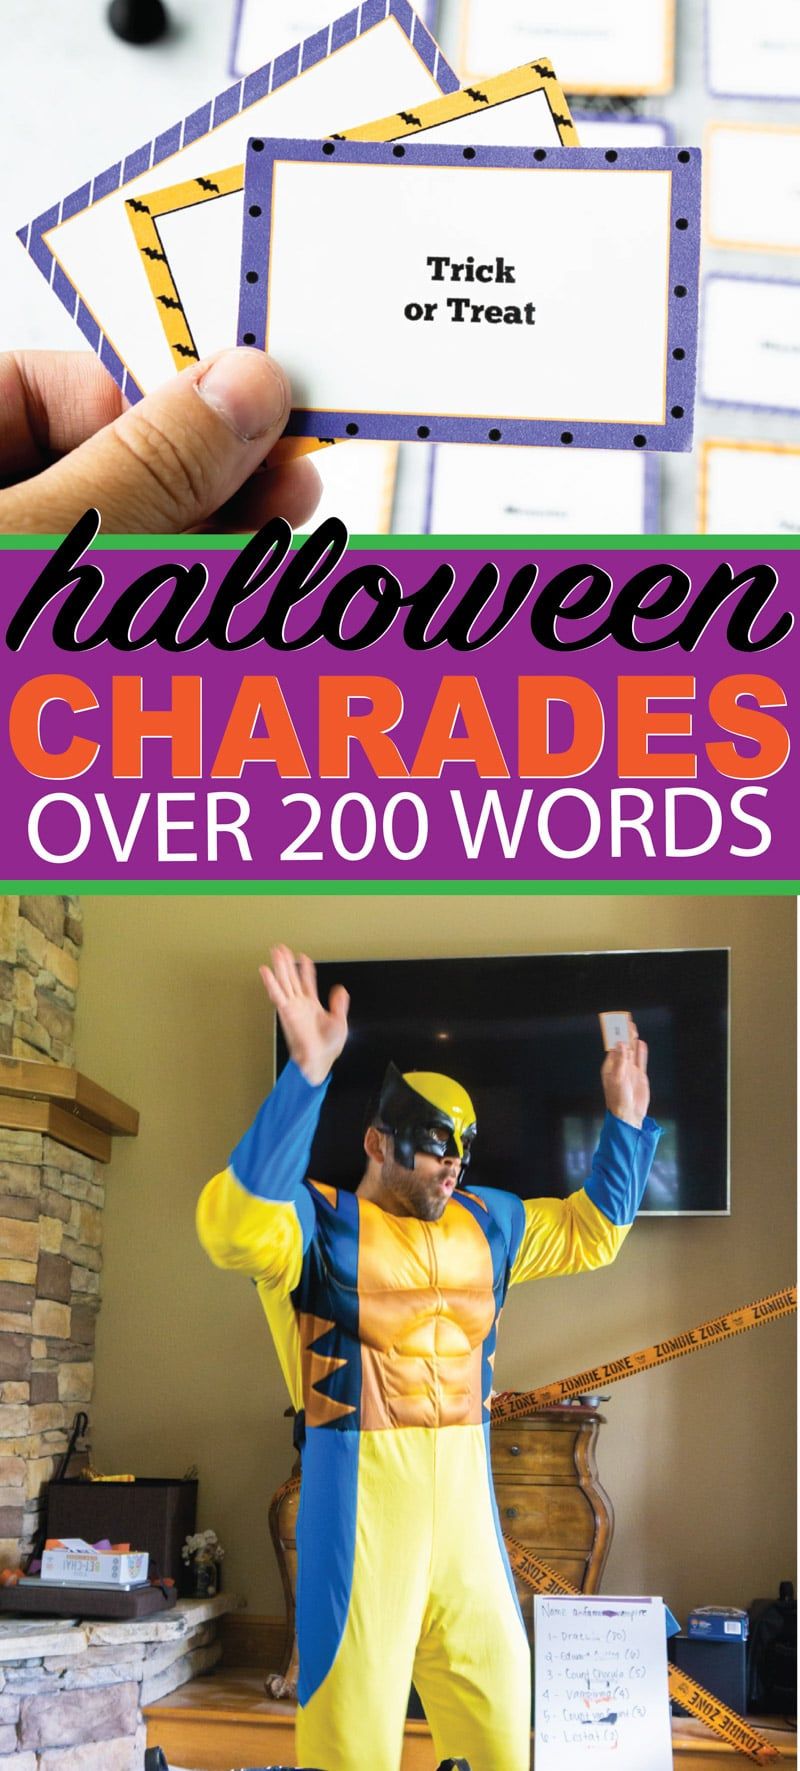 Druckbare Liste von Halloween-Scharadenwörtern für Kinder und Erwachsene! Über 100 verschiedene Wörter zum Thema Halloween, die leicht zu erraten und lustig zu spielen sind! Alles von Halloween-Filmen bis hin zu normalen Worten für eine Klassenparty!